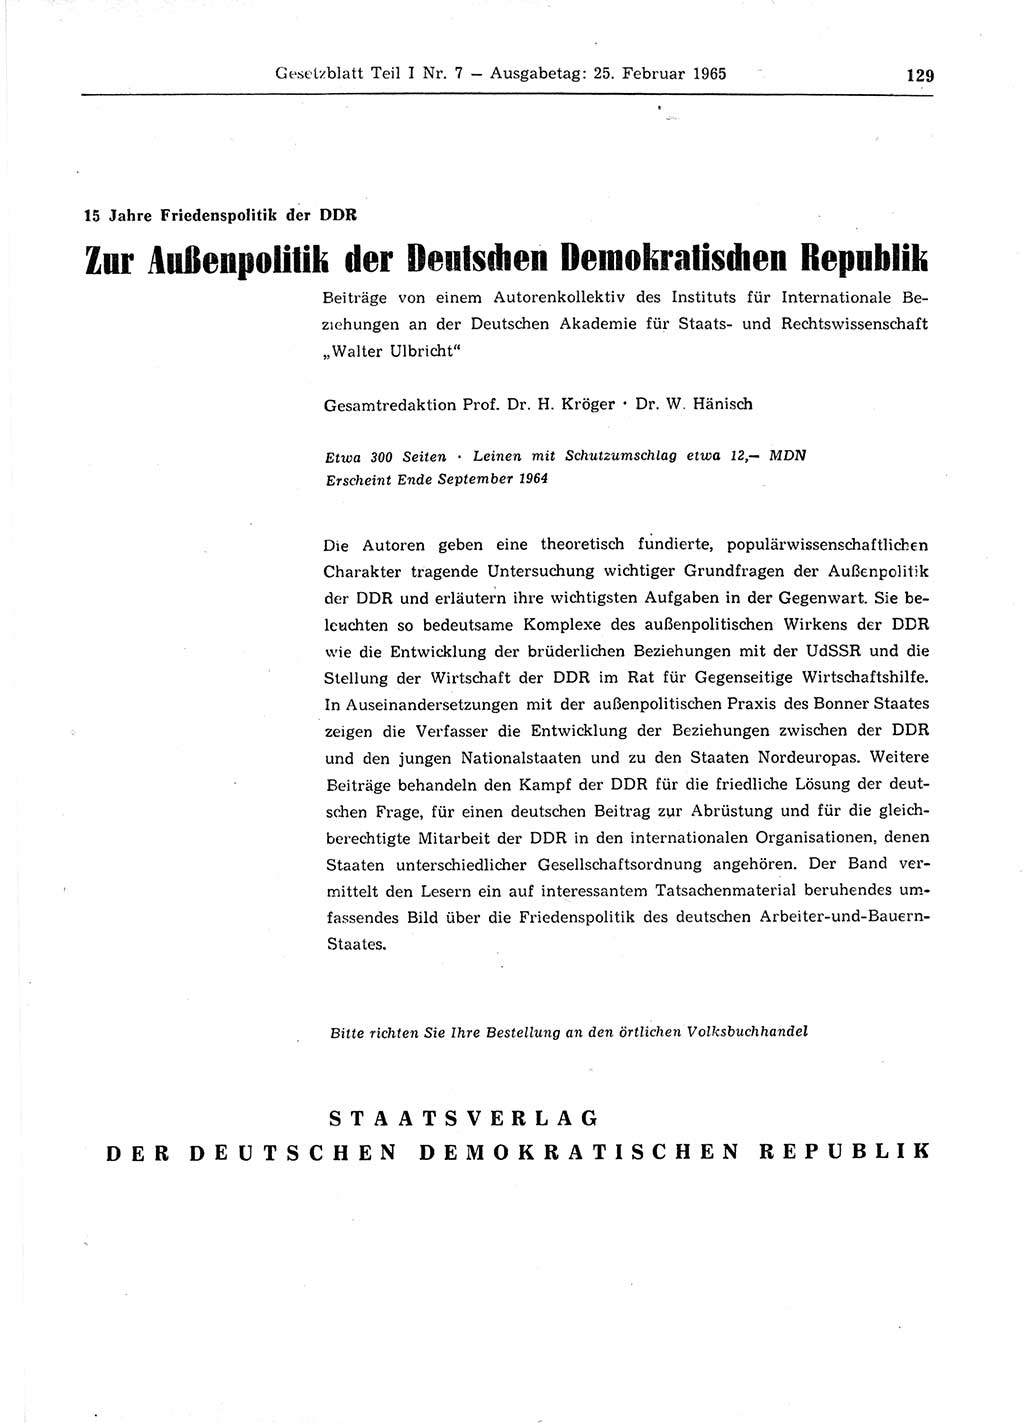 Gesetzblatt (GBl.) der Deutschen Demokratischen Republik (DDR) Teil Ⅰ 1965, Seite 129 (GBl. DDR Ⅰ 1965, S. 129)